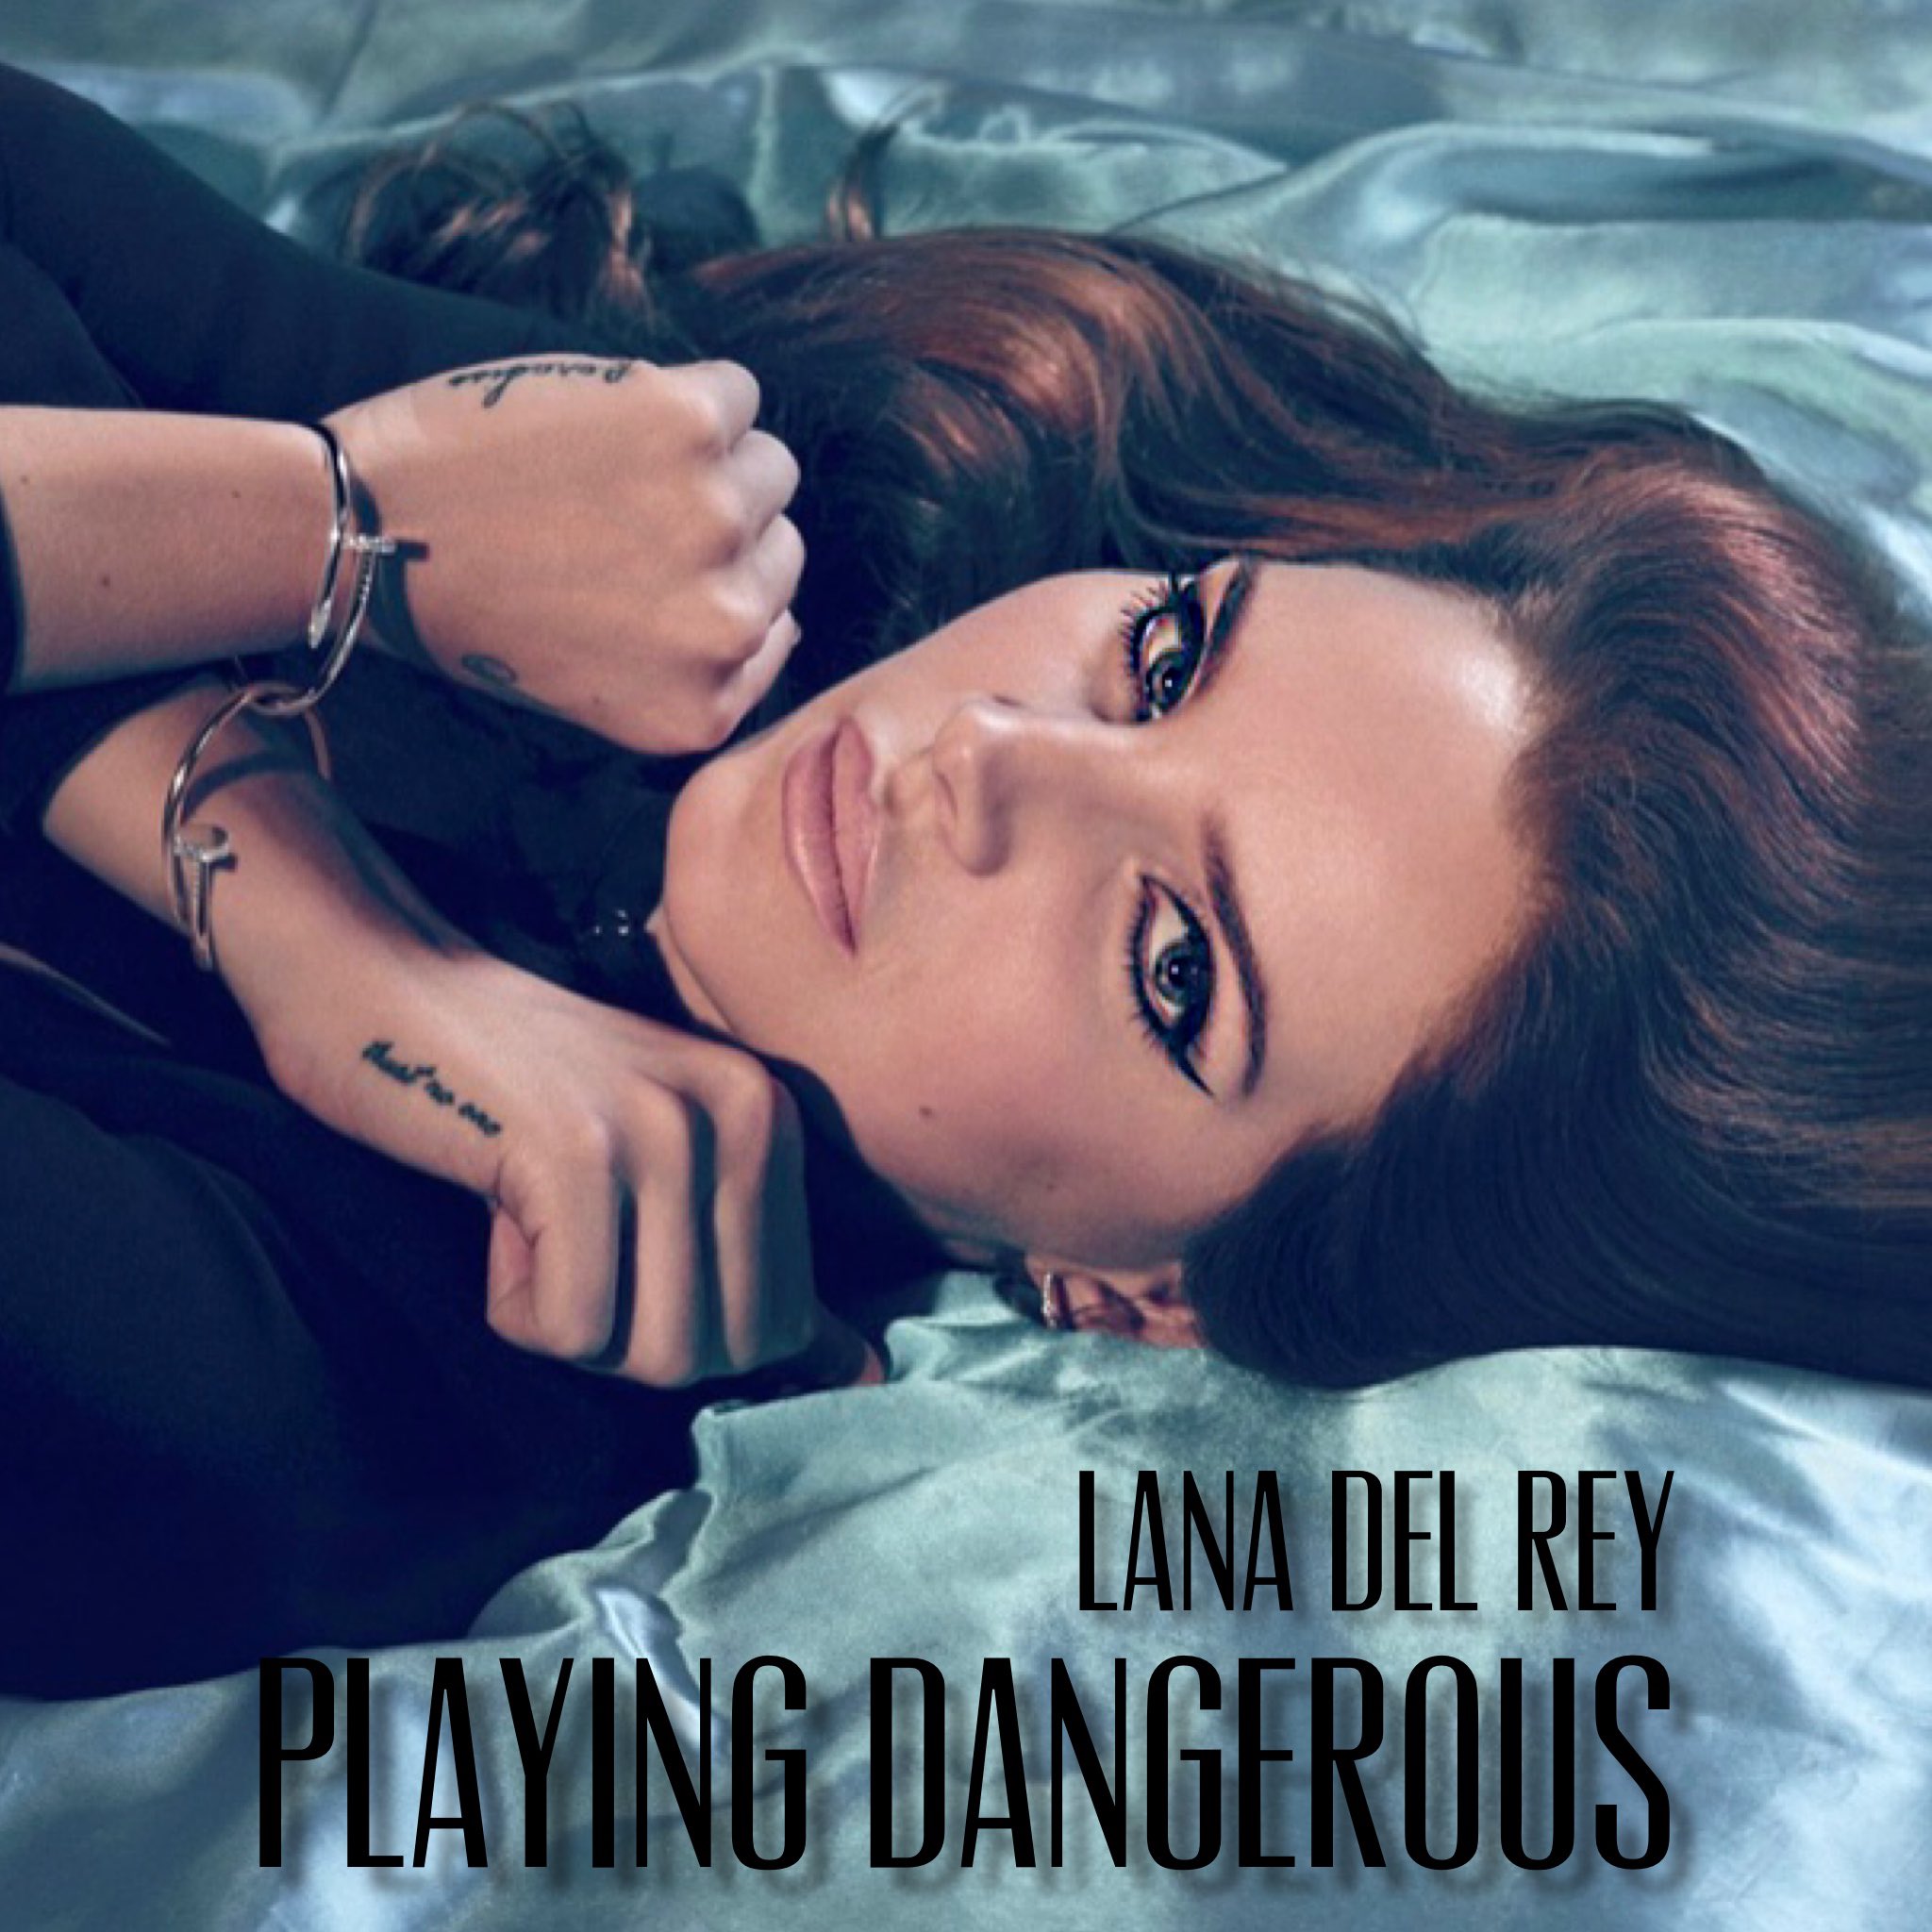 playing dangerous by lana del rey spotify｜TikTok Search